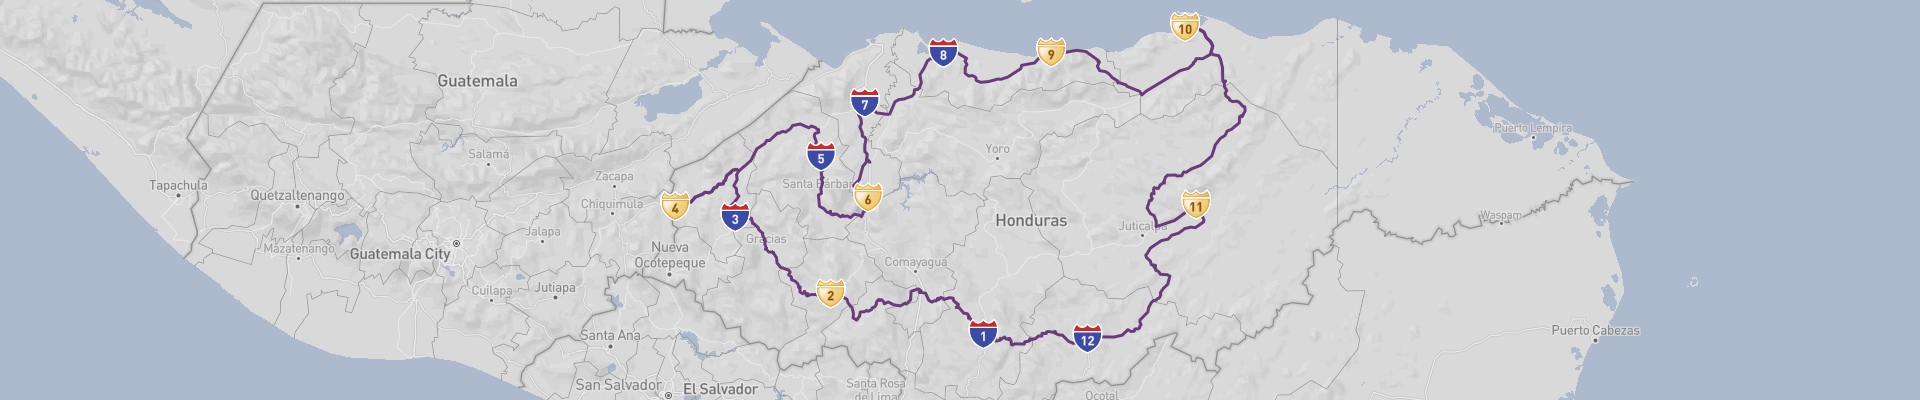 Honduras Road Trip